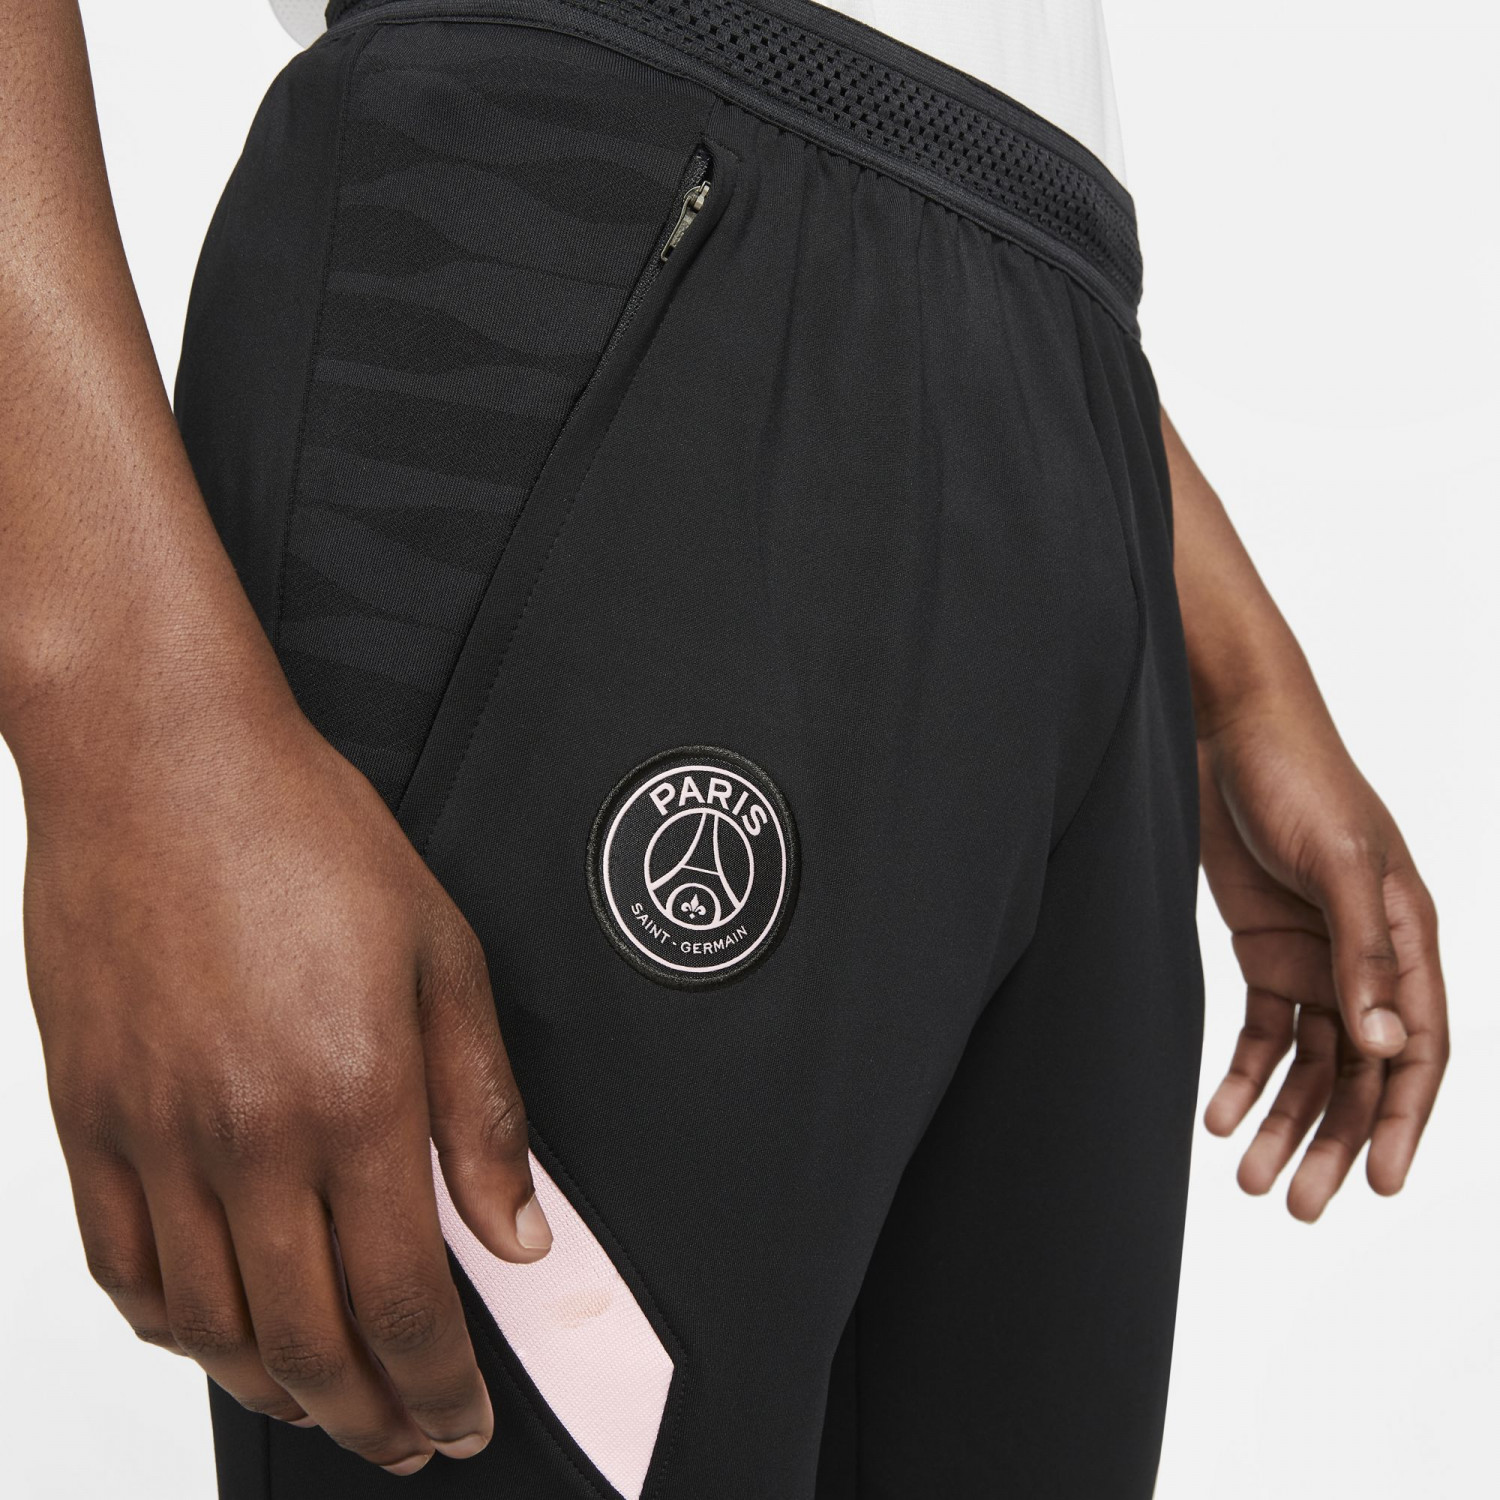 Pantalon survêtement PSG noir rose 2021/22 sur